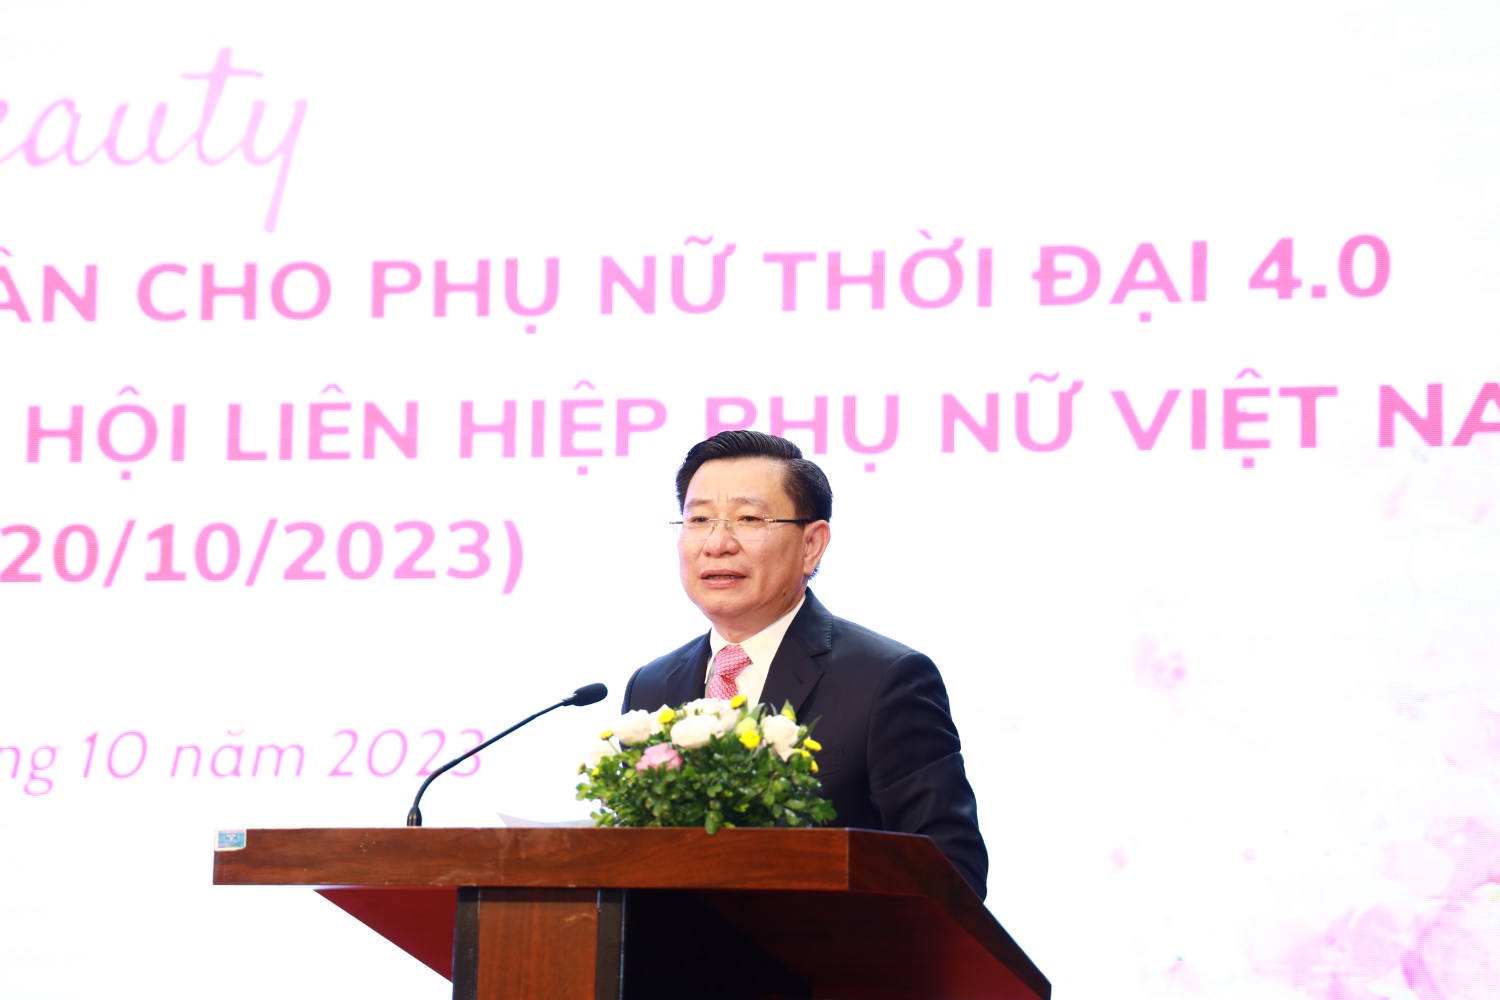 PGS.TS Hoàng Anh Huy, Bí thư Đảng ủy, Hiệu trưởng Nhà trường gửi lời chúc mừng nhân Kỷ niệm ngày Phụ nữ Việt Nam 20/10 tại chương trình.